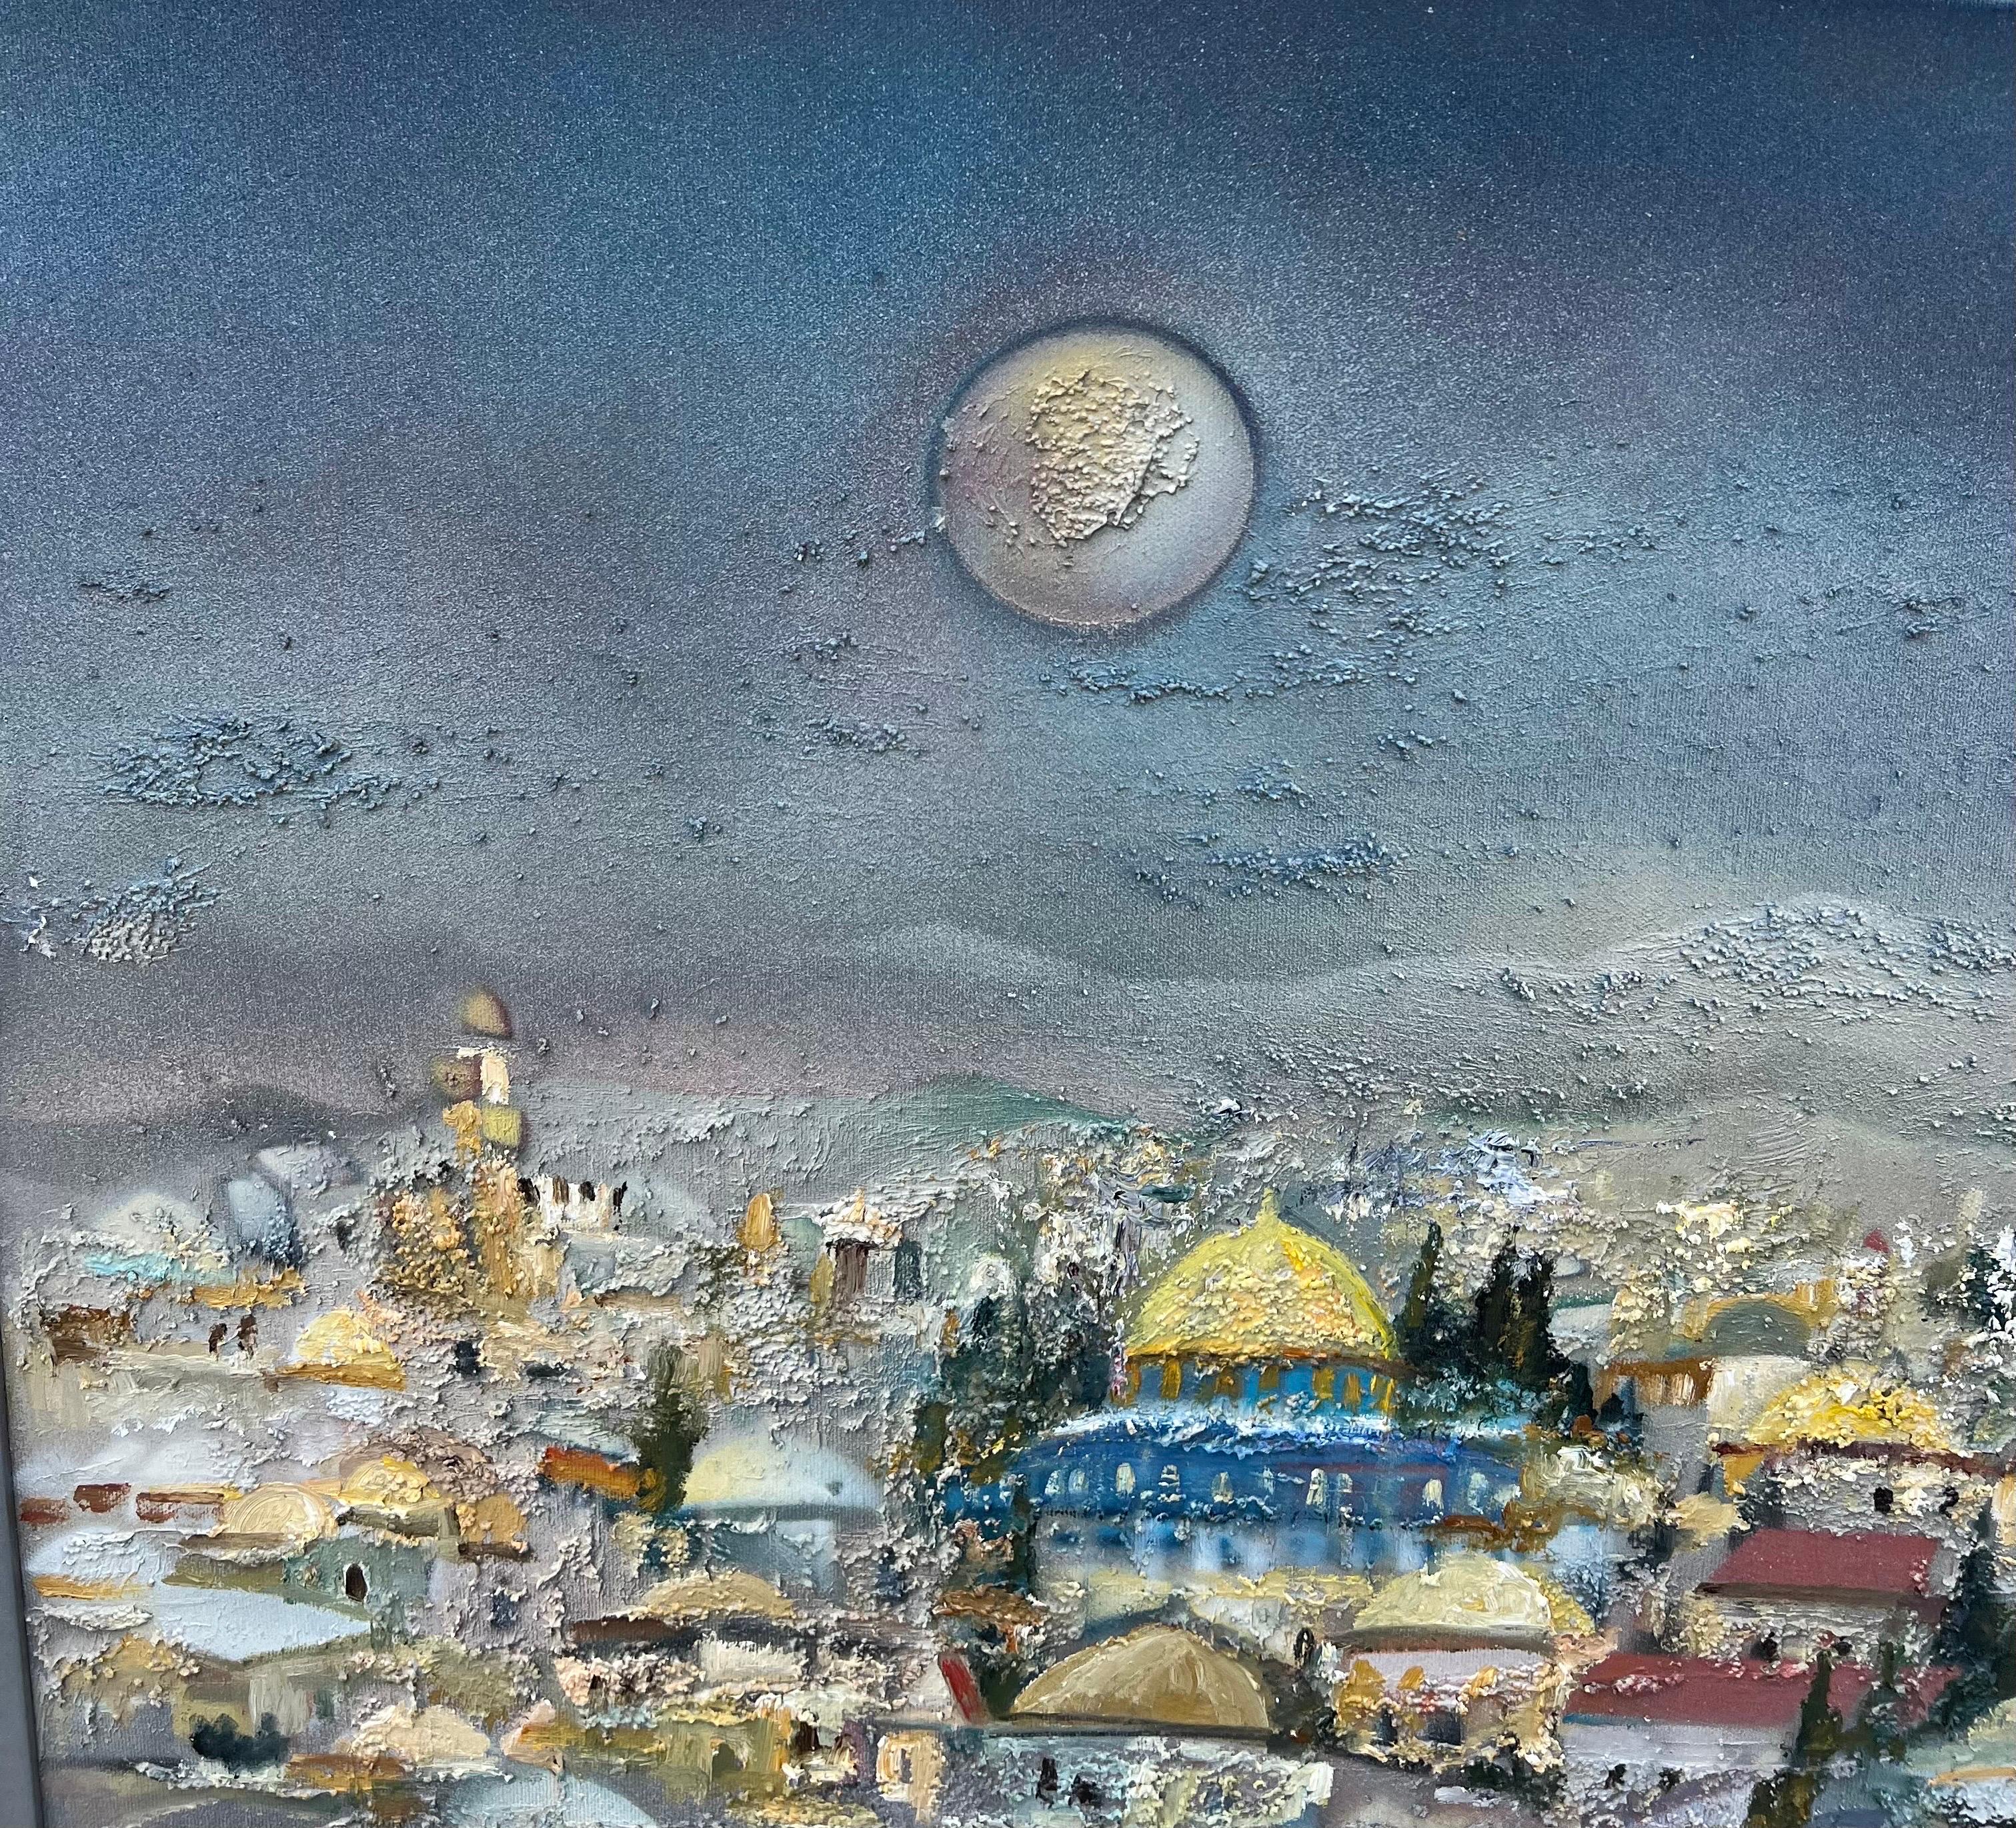 Jérusalem paysage urbain israélien avec le HAR Habayit, le Mont du Temple.
Les dimensions incluent le cadre. La toile est de 37.5 X 42.5

Edward Ben Avram (né en 1941) est un artiste indien et israélien né à Bombay, en Inde, et qui a immigré en